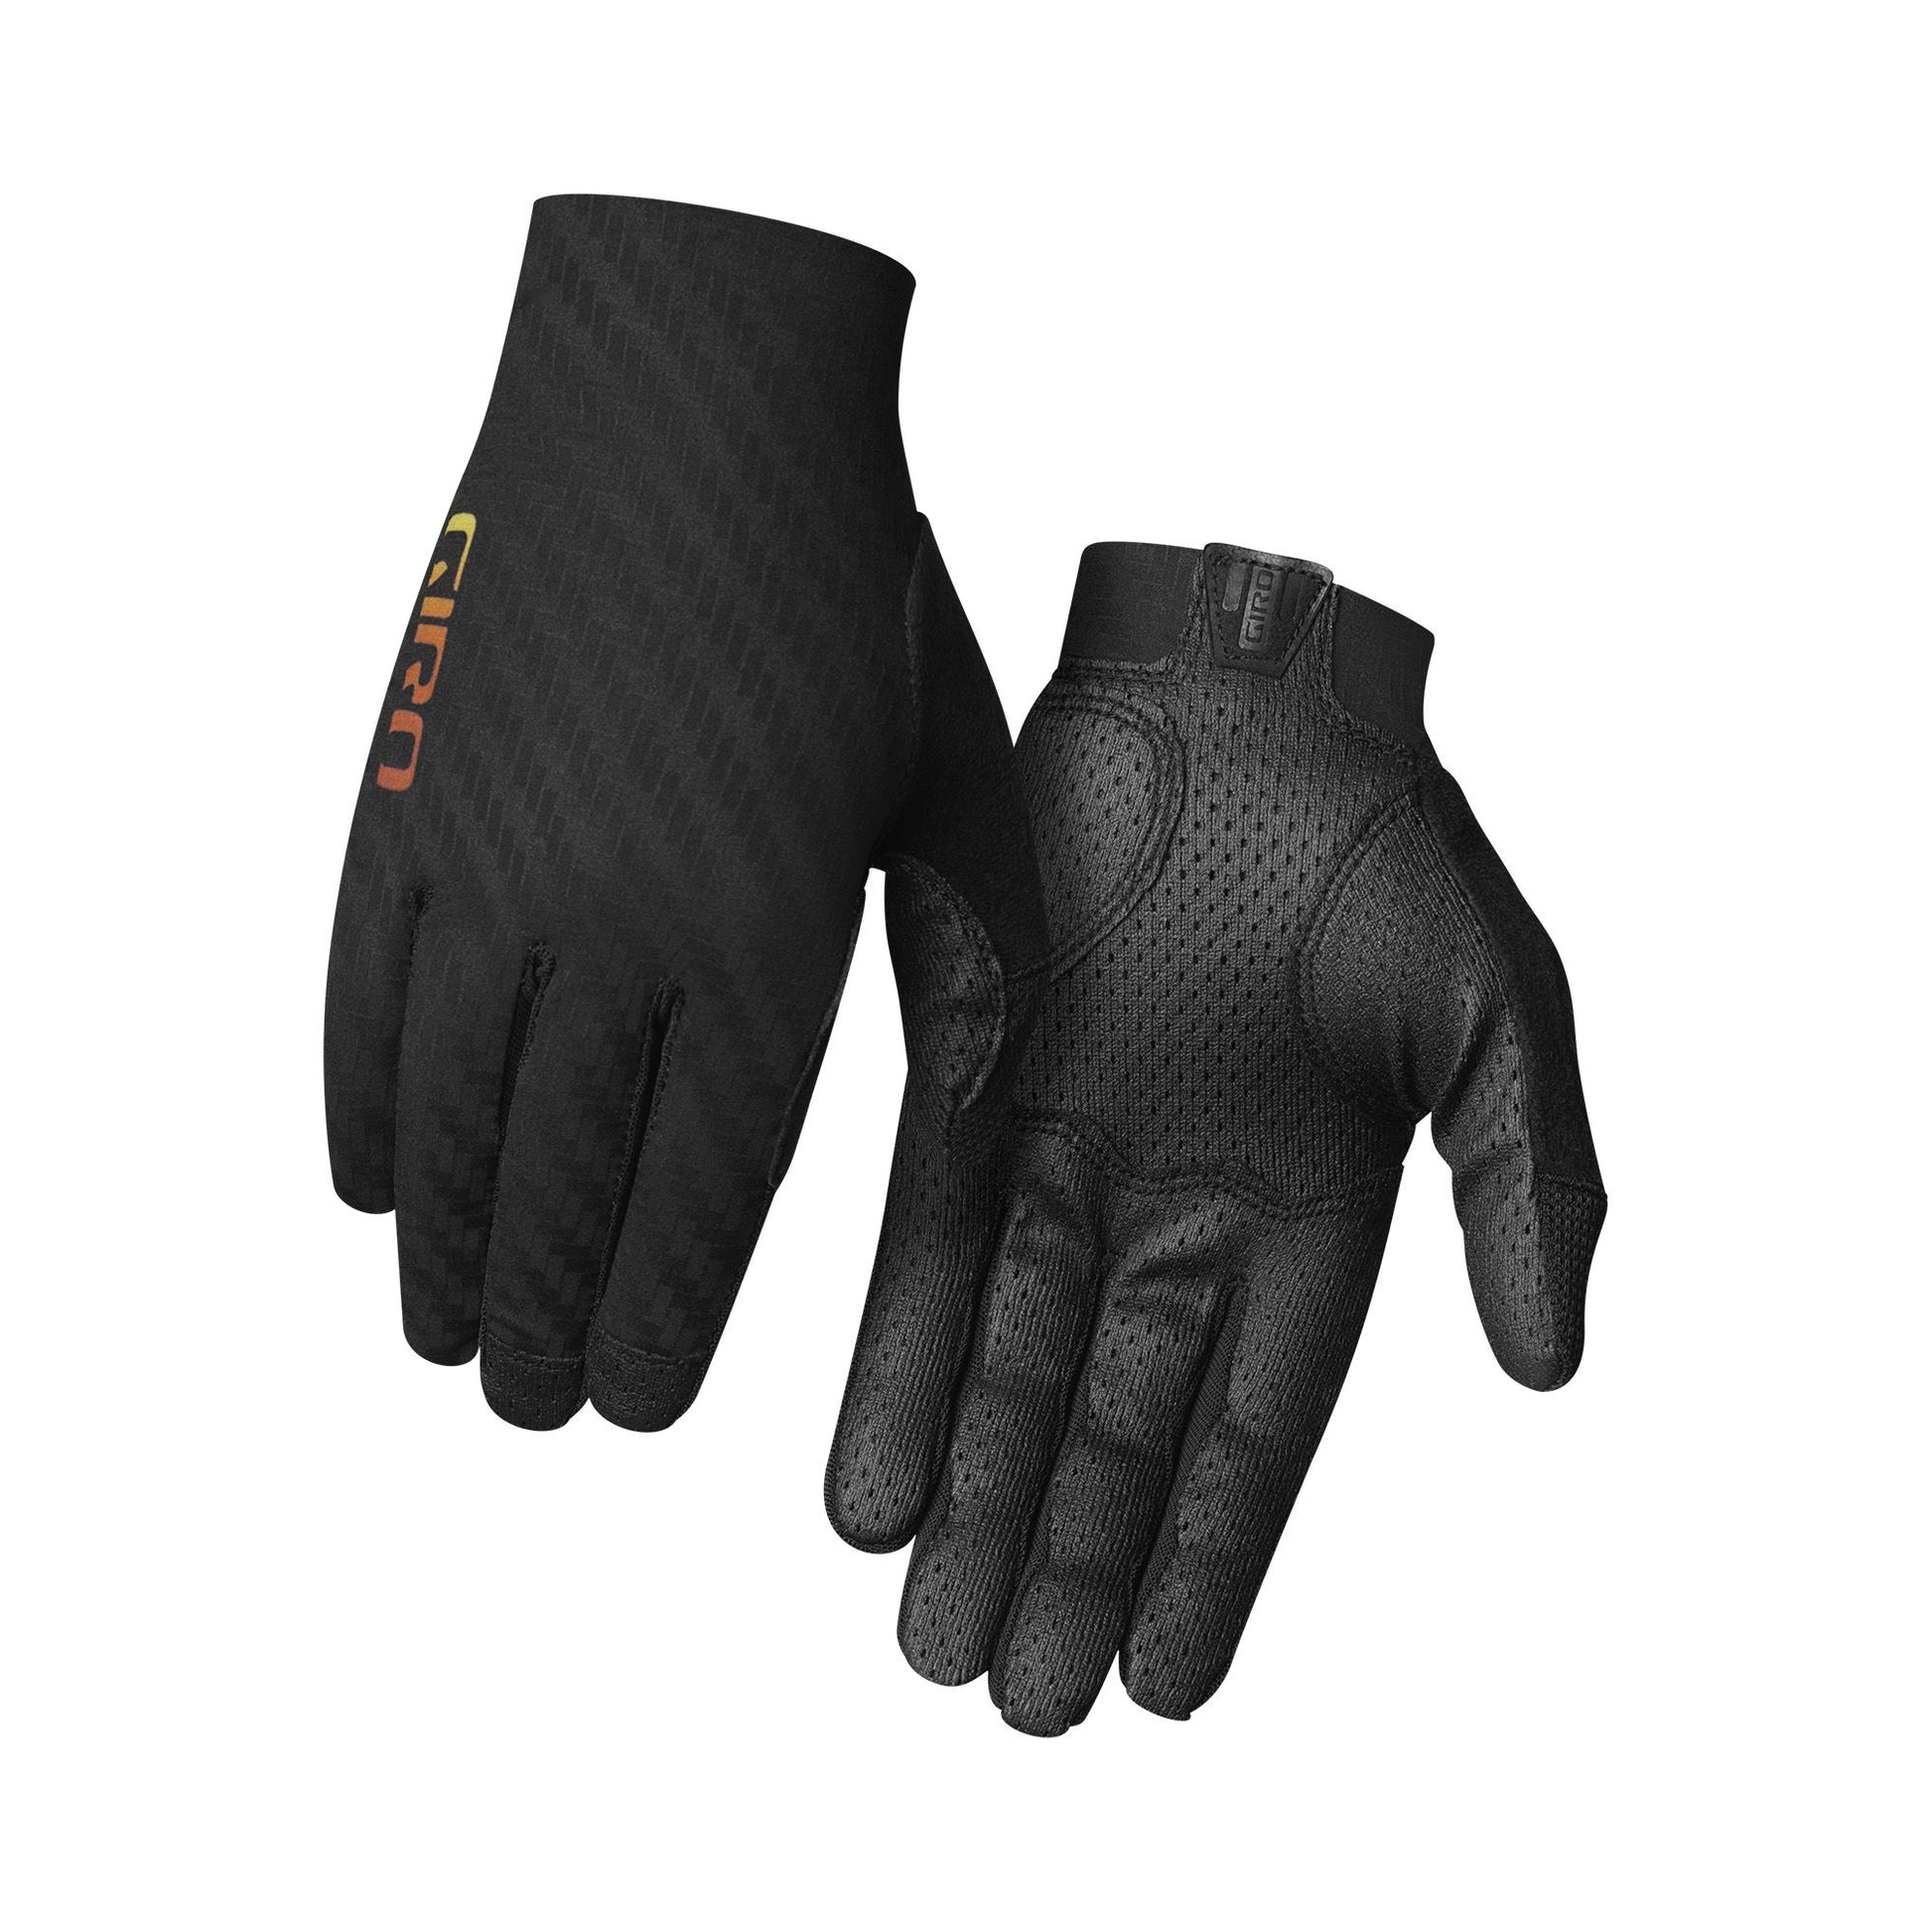 Giro Rivet CS Glove Black/Heatwave Bike Gloves